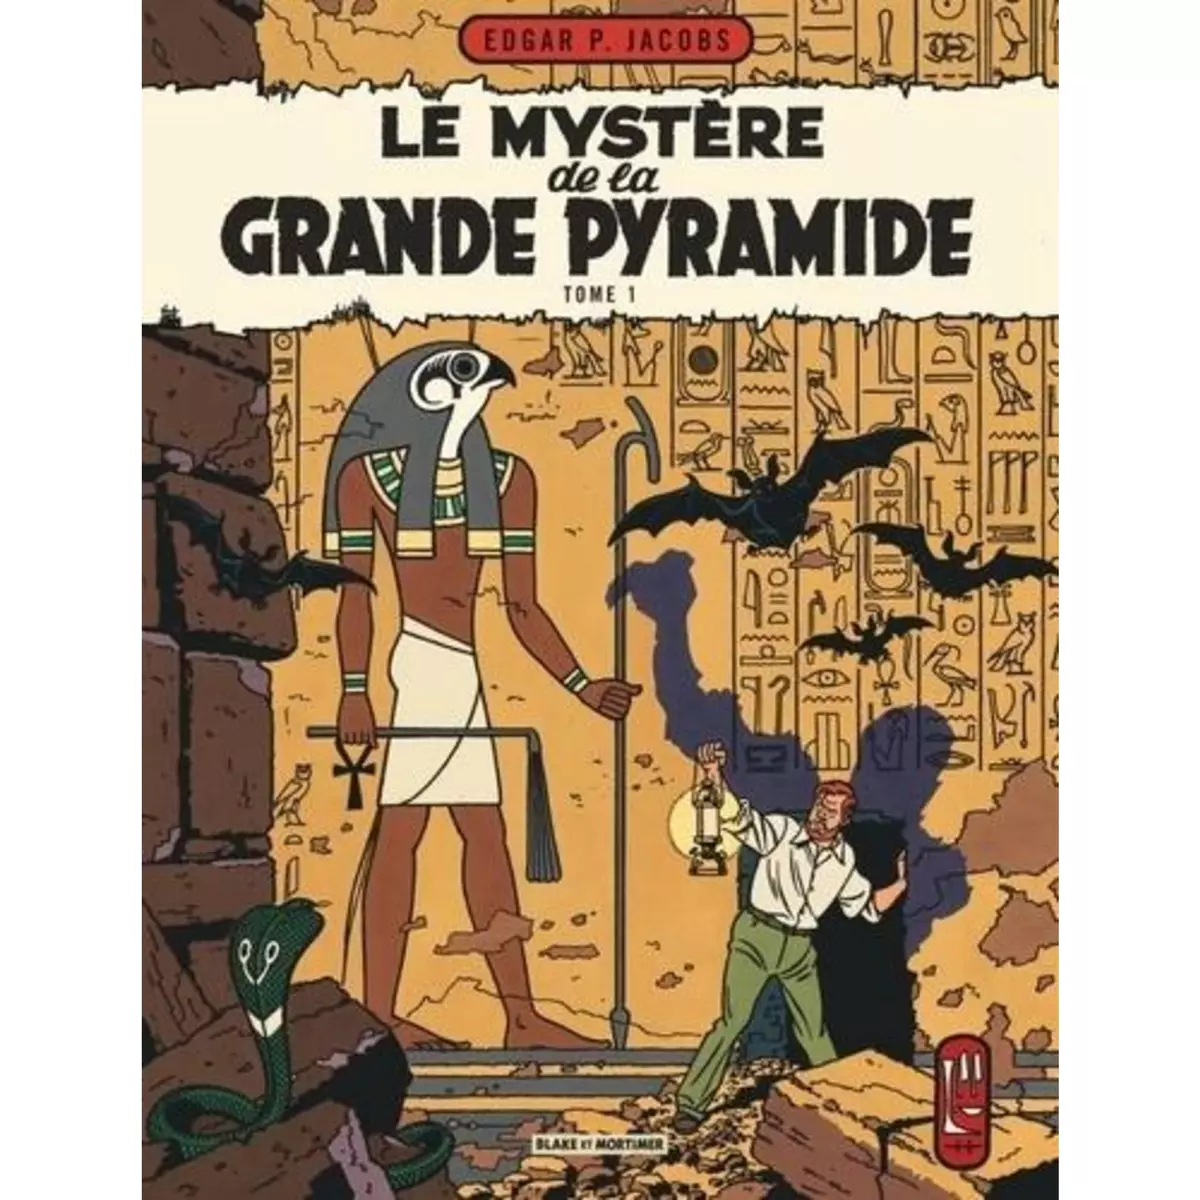  LES AVENTURES DE BLAKE ET MORTIMER TOME 4 : LE MYSTERE DE LA GRANDE PYRAMIDE. TOME 1, Jacobs Edgar Pierre